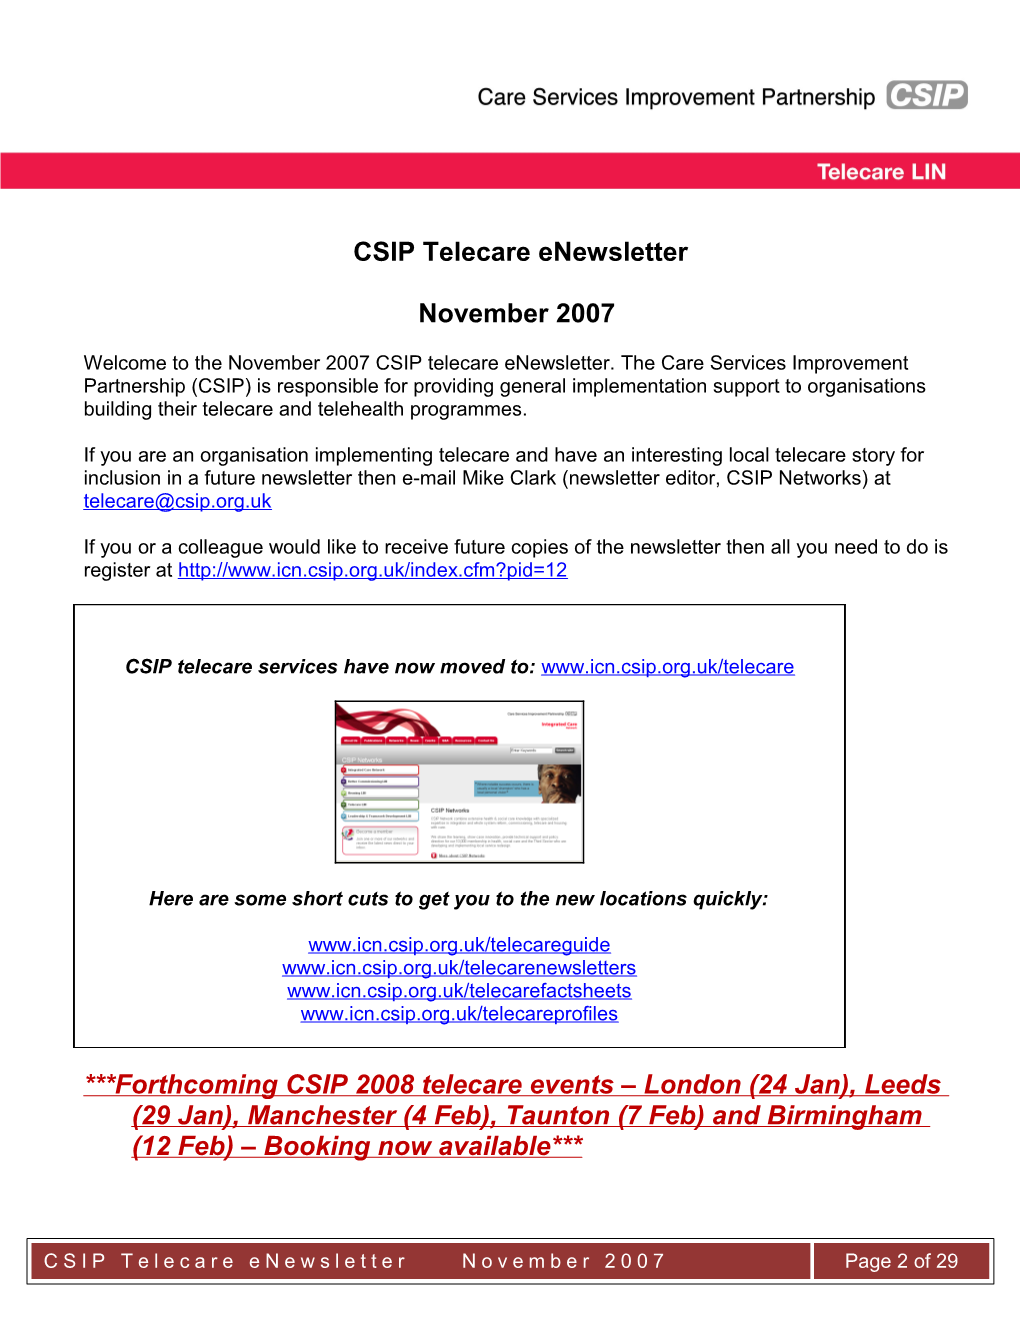 CSIP Telecare Enewsletter